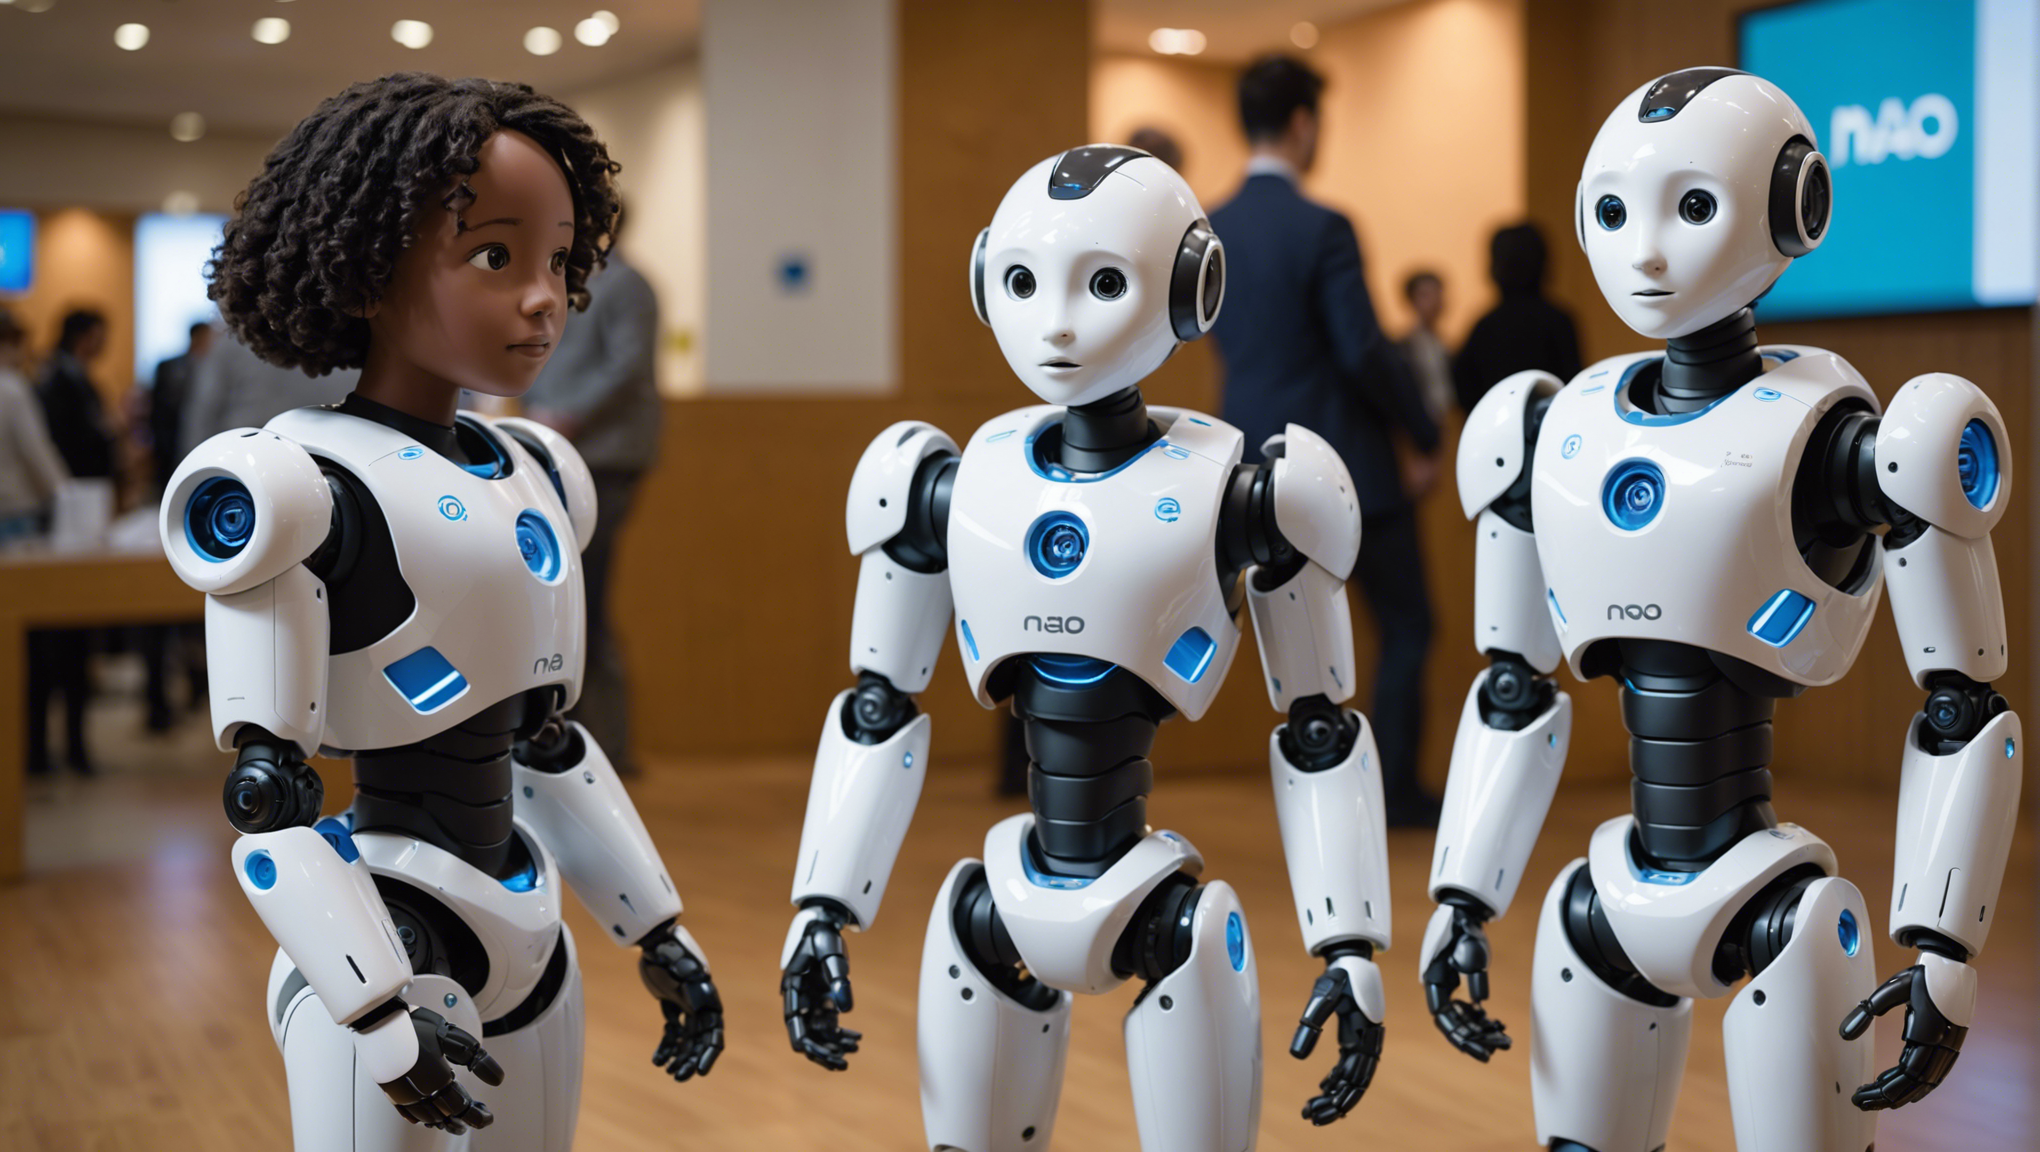 découvrez le nouveau nao next gen, un robot humanoïde programmable, disponible sur génération robots. profitez de ses performances exceptionnelles et de sa convivialité pour développer des applications innovantes.